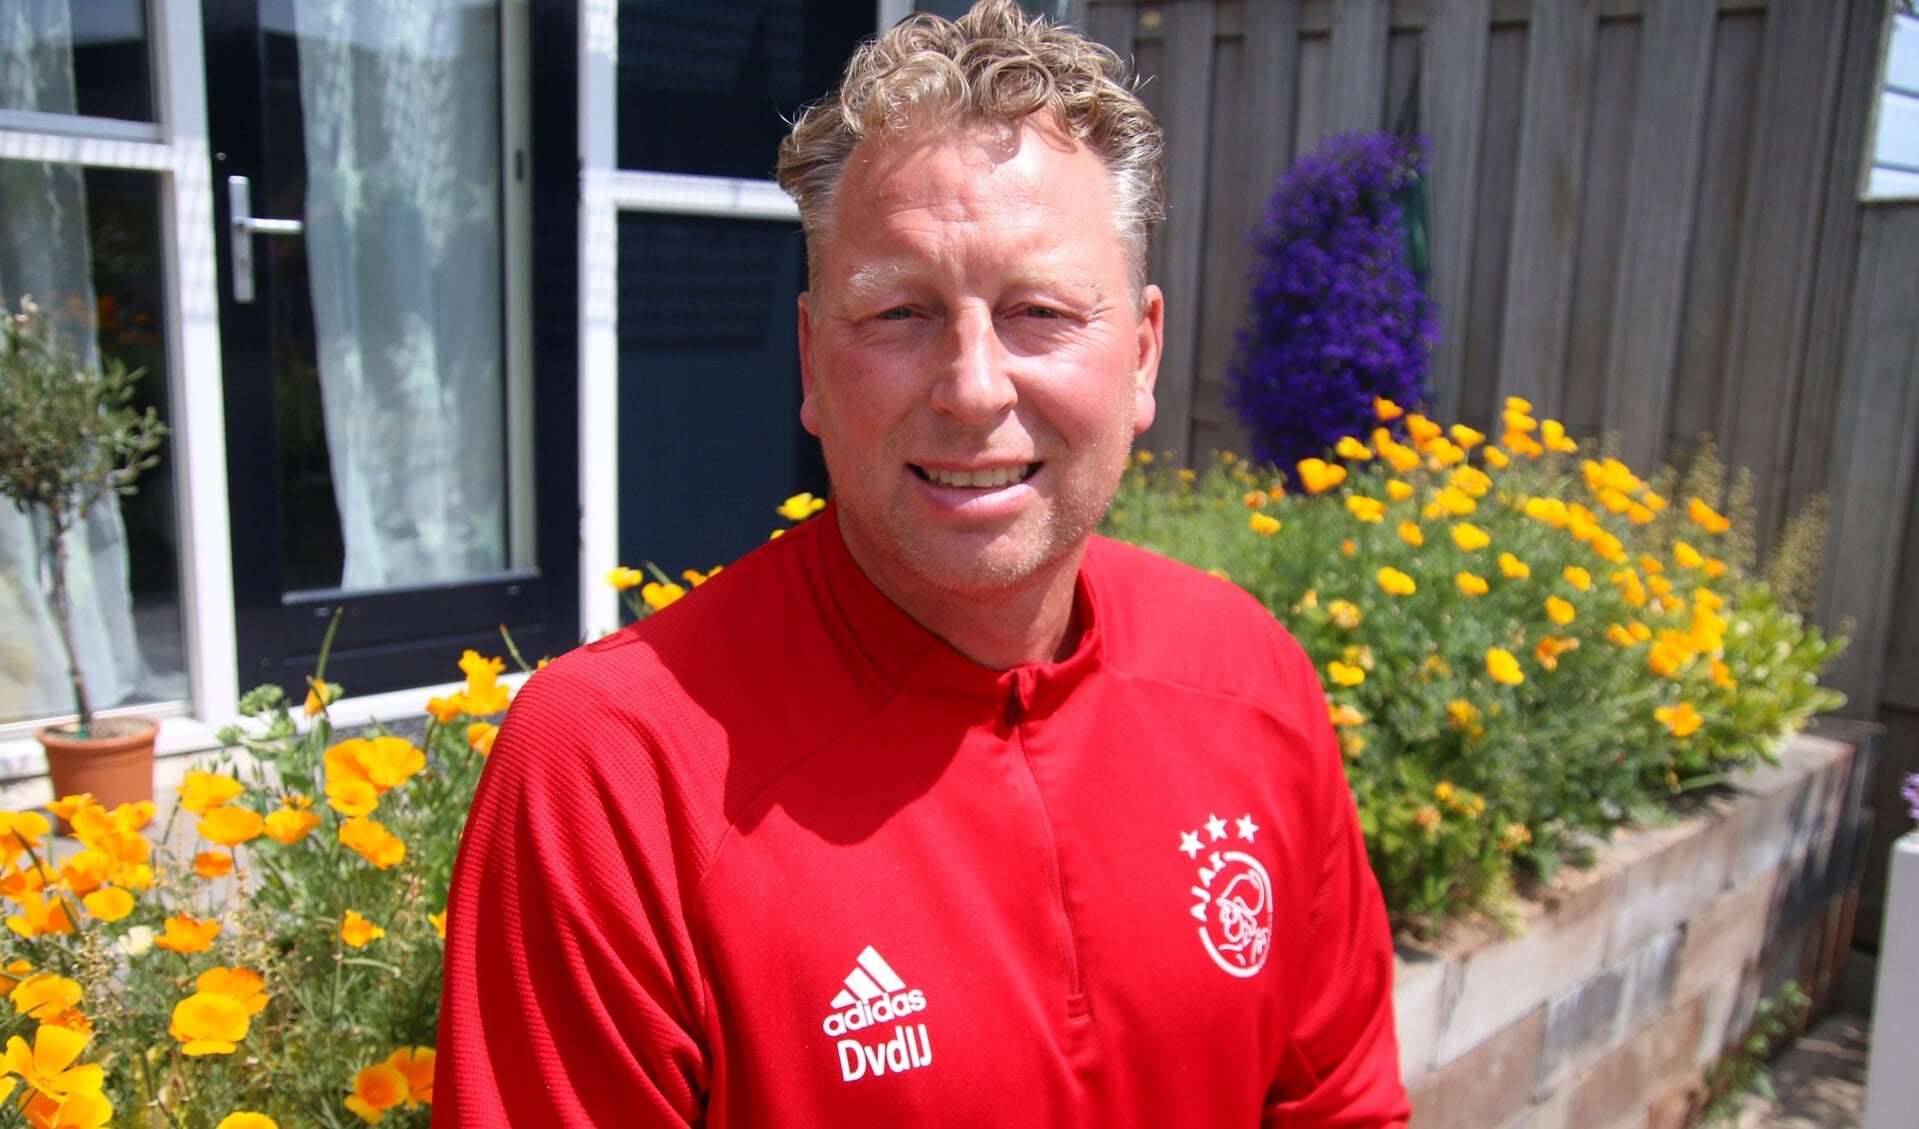 Nu John Heitinga doorstroomt naar Jong Ajax, heeft Dennis van den IJssel een nieuwe functie bij de Amsterdammers. Hij is nu de hoofdcoach geworden van Ajax O16.